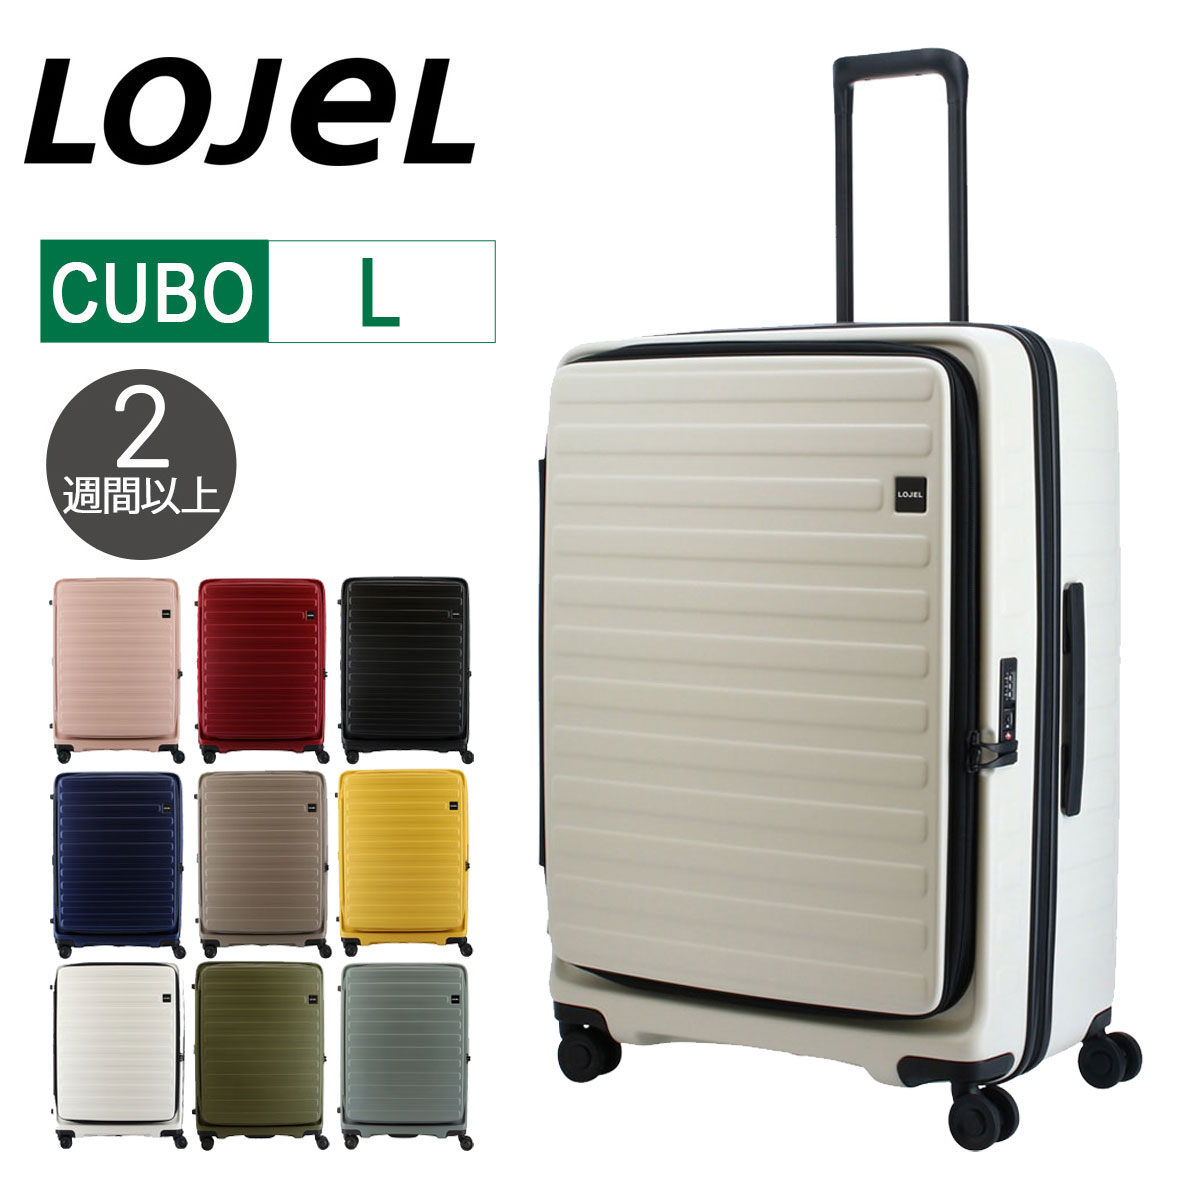 22995円 未使用 新品未使用 LOJEL CUBO Lサイズ スーツケース キャリーケース